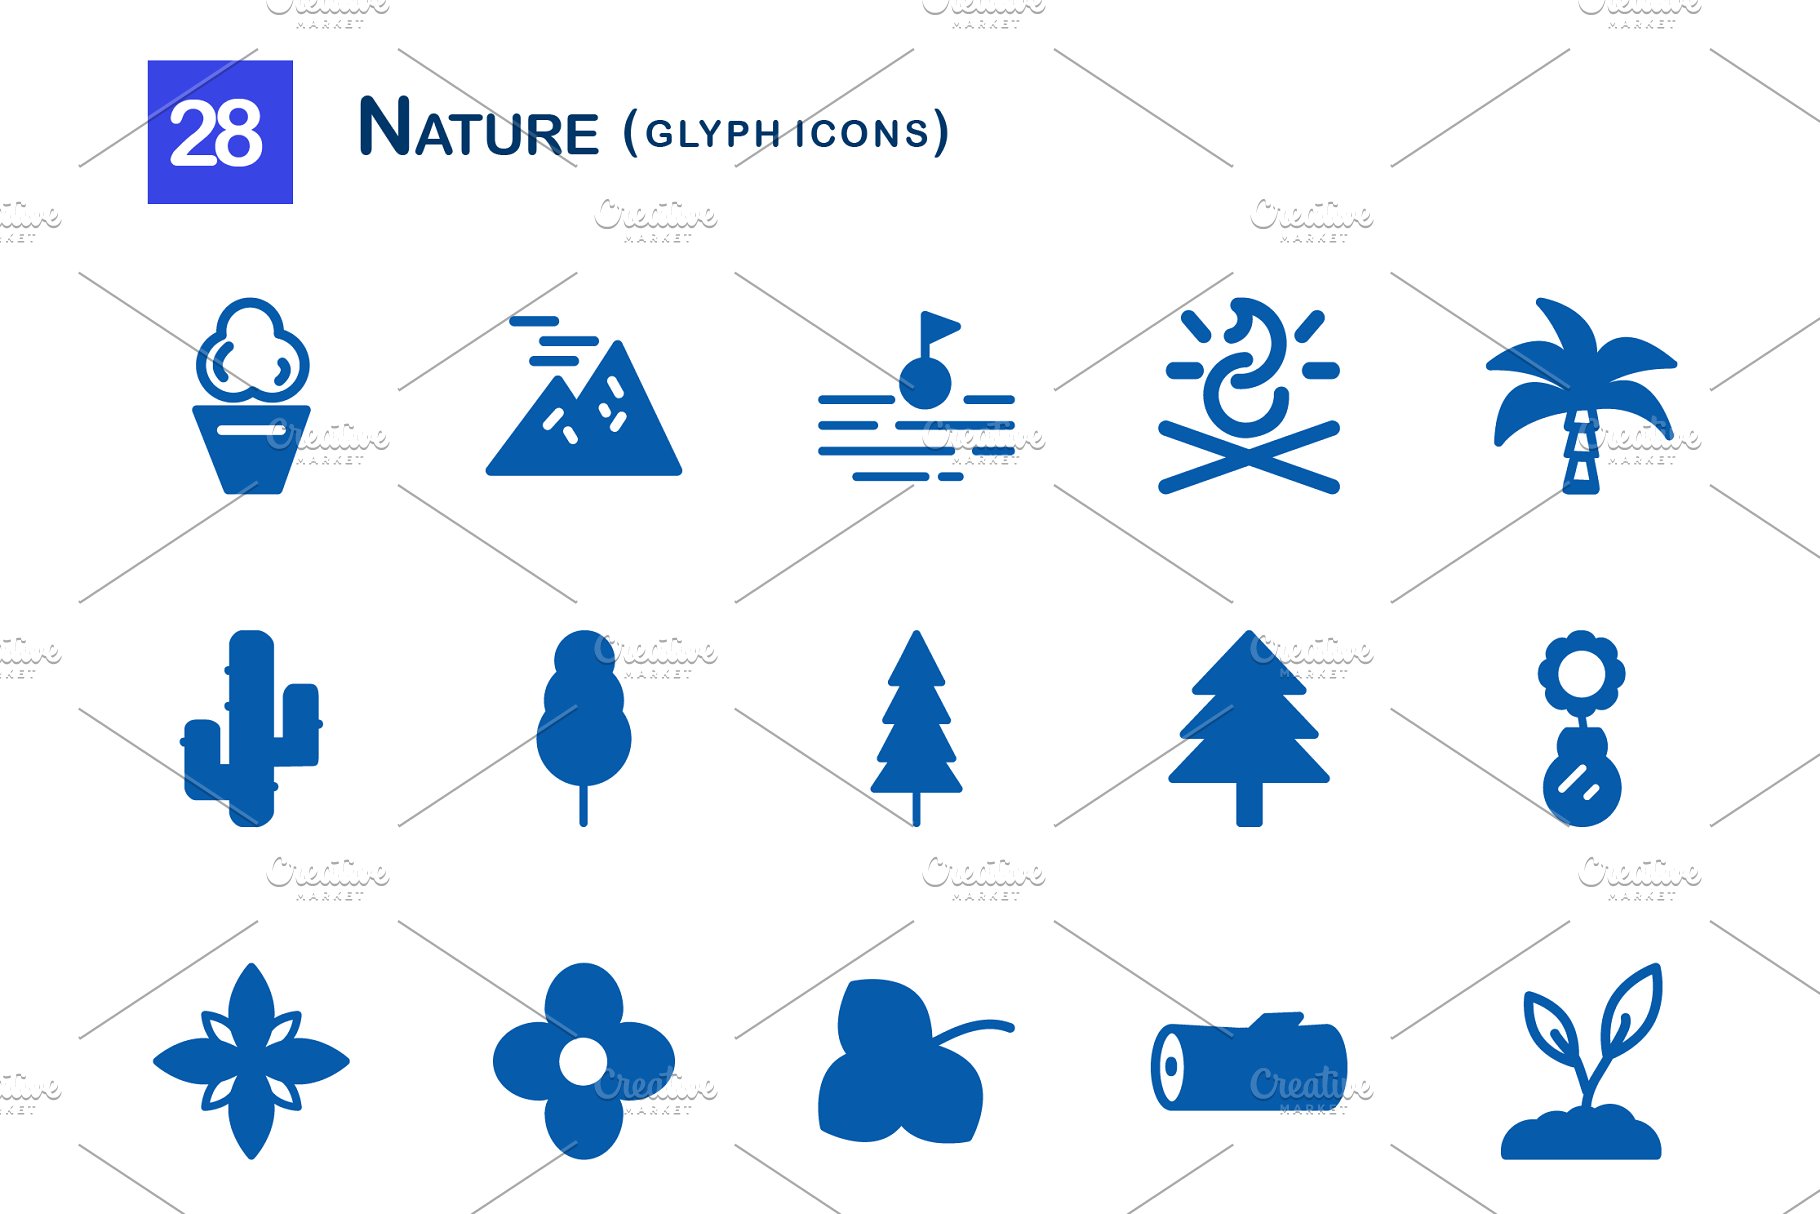 28个大自然元素字体16设计素材网精选图标 28 Nature Glyph Icons插图(1)